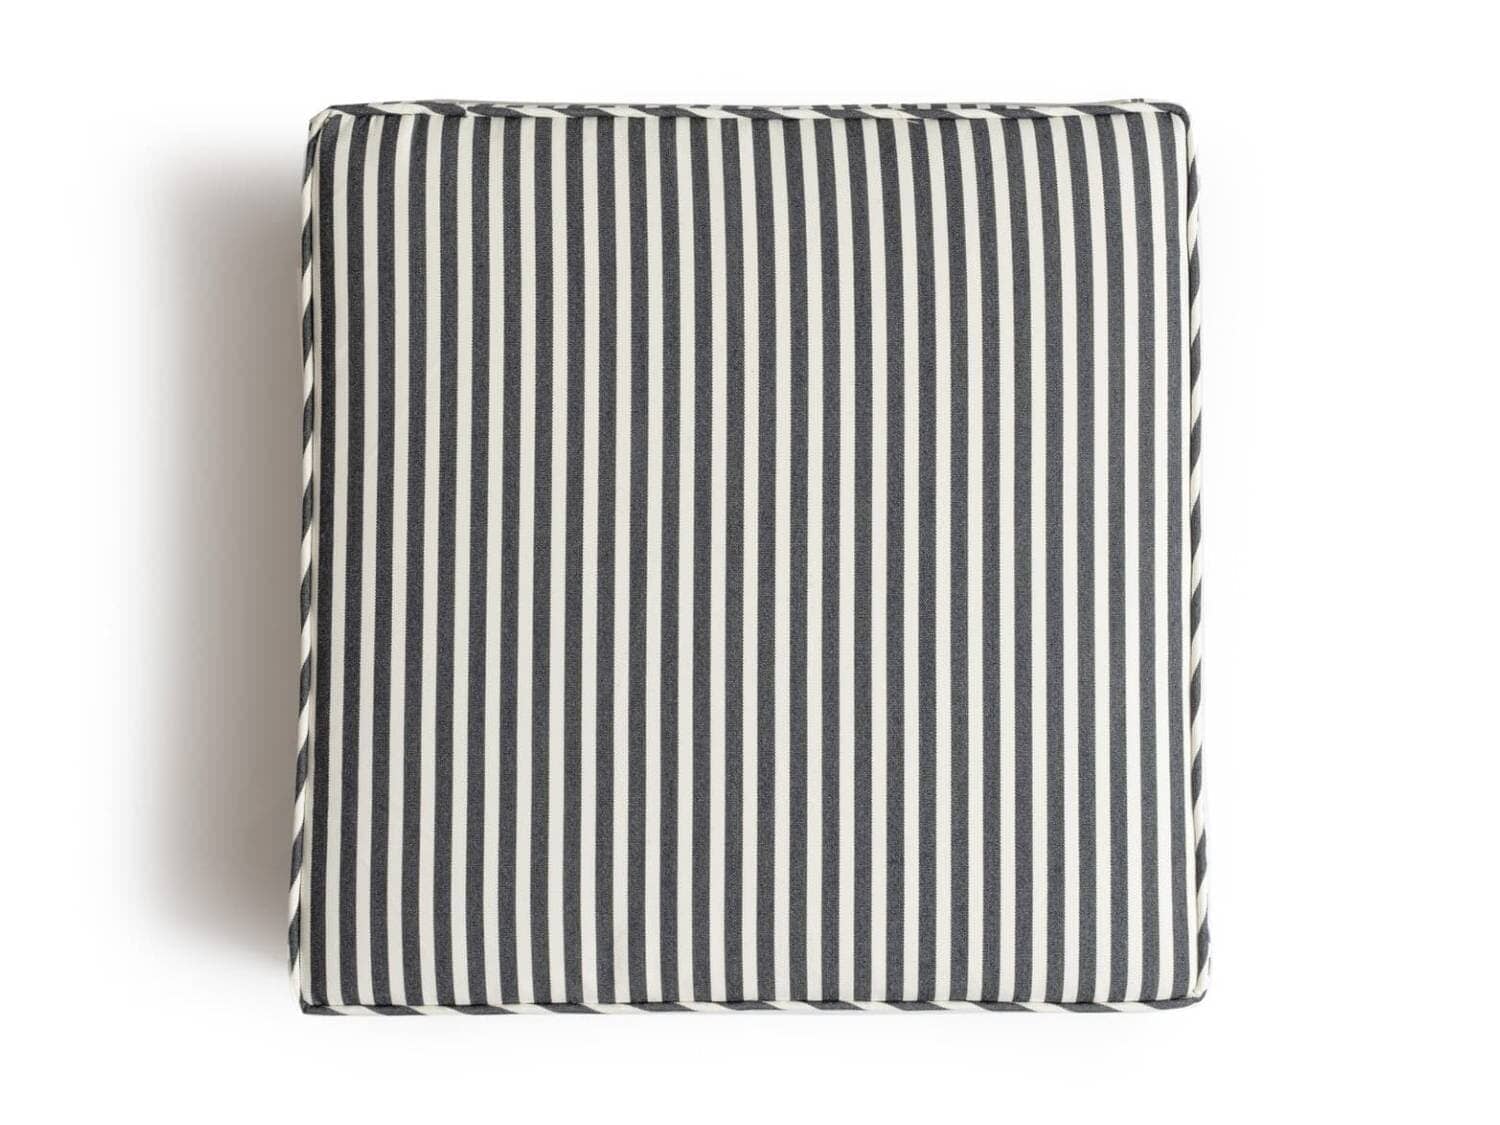 studio image of lauren's navy stripe seat pillow